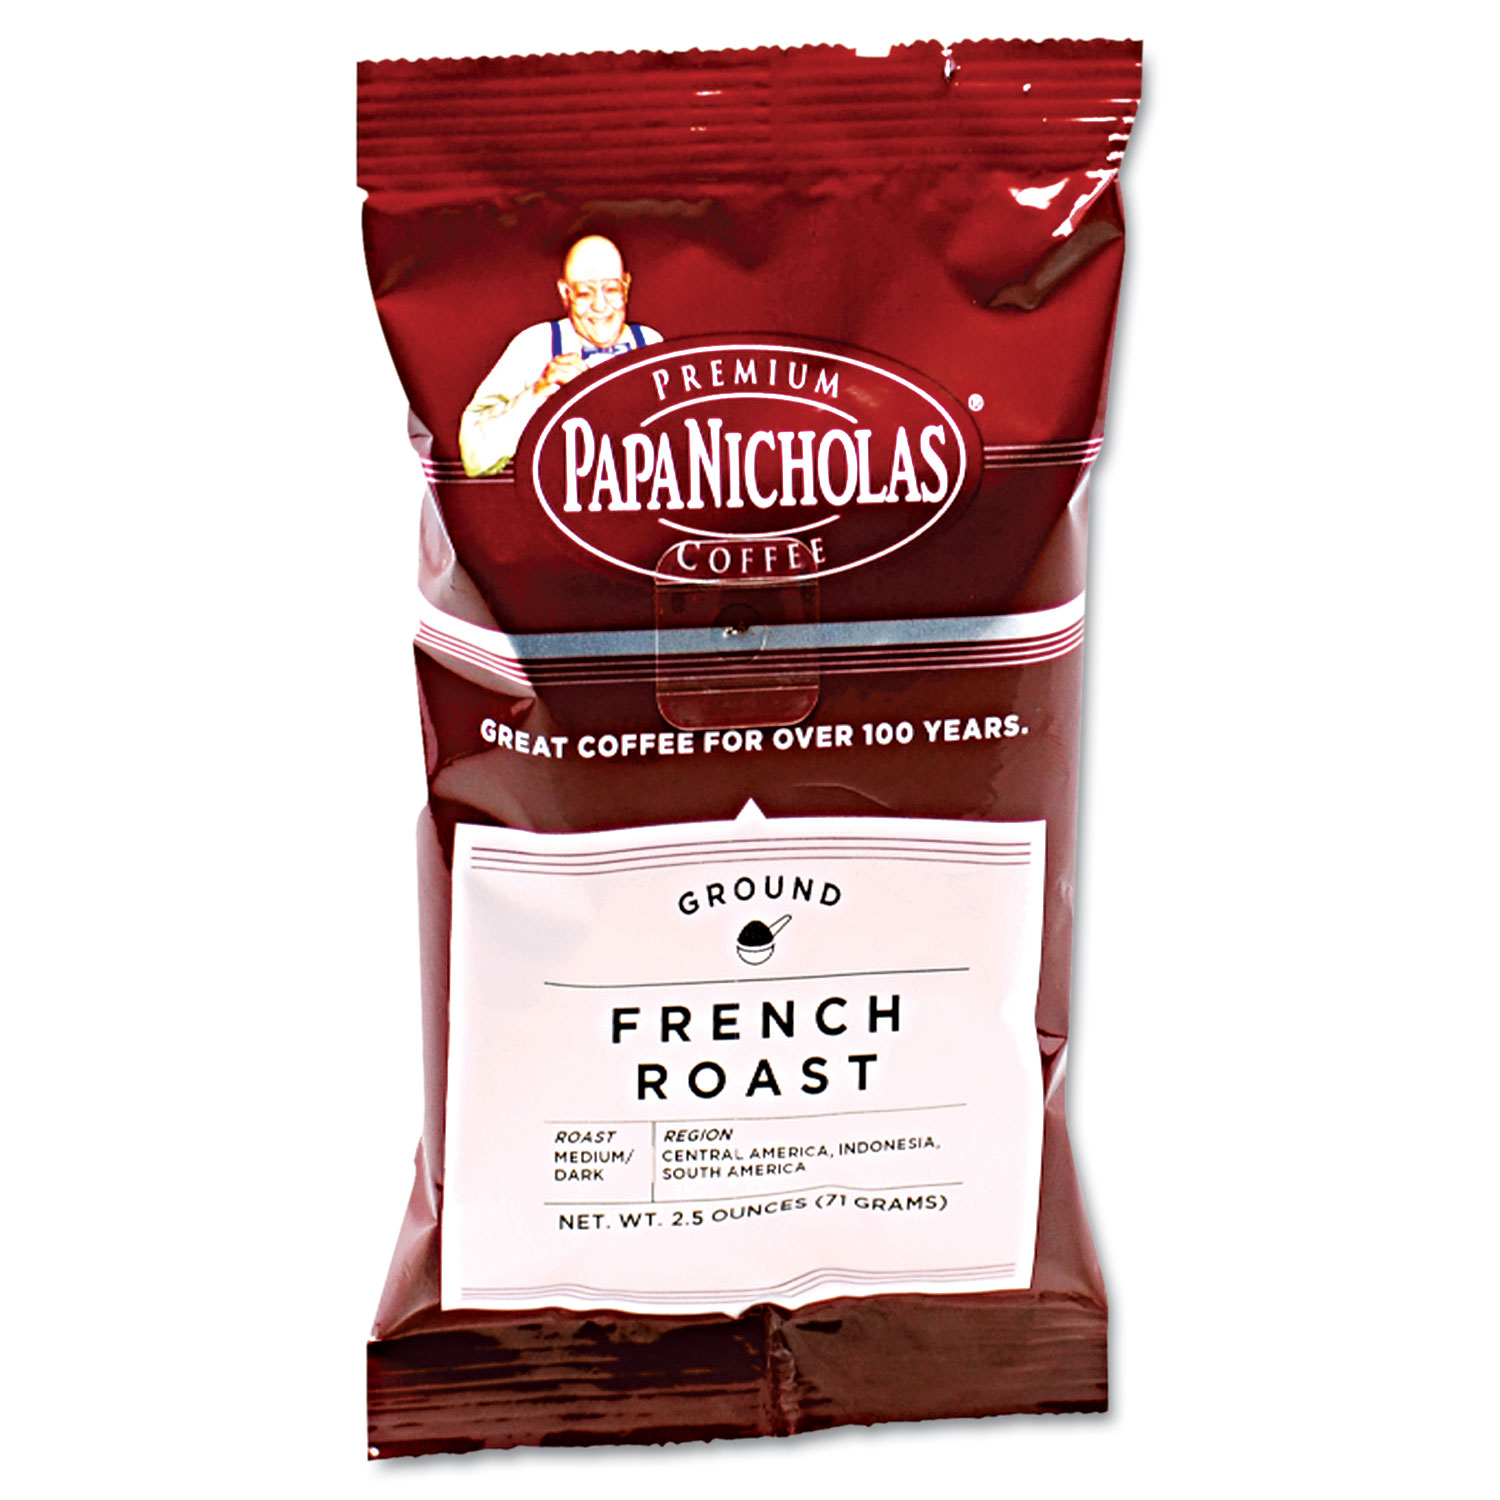  PapaNicholas Coffee 25183 Premium Coffee, French Roast, 18/Carton (PCO25183) 